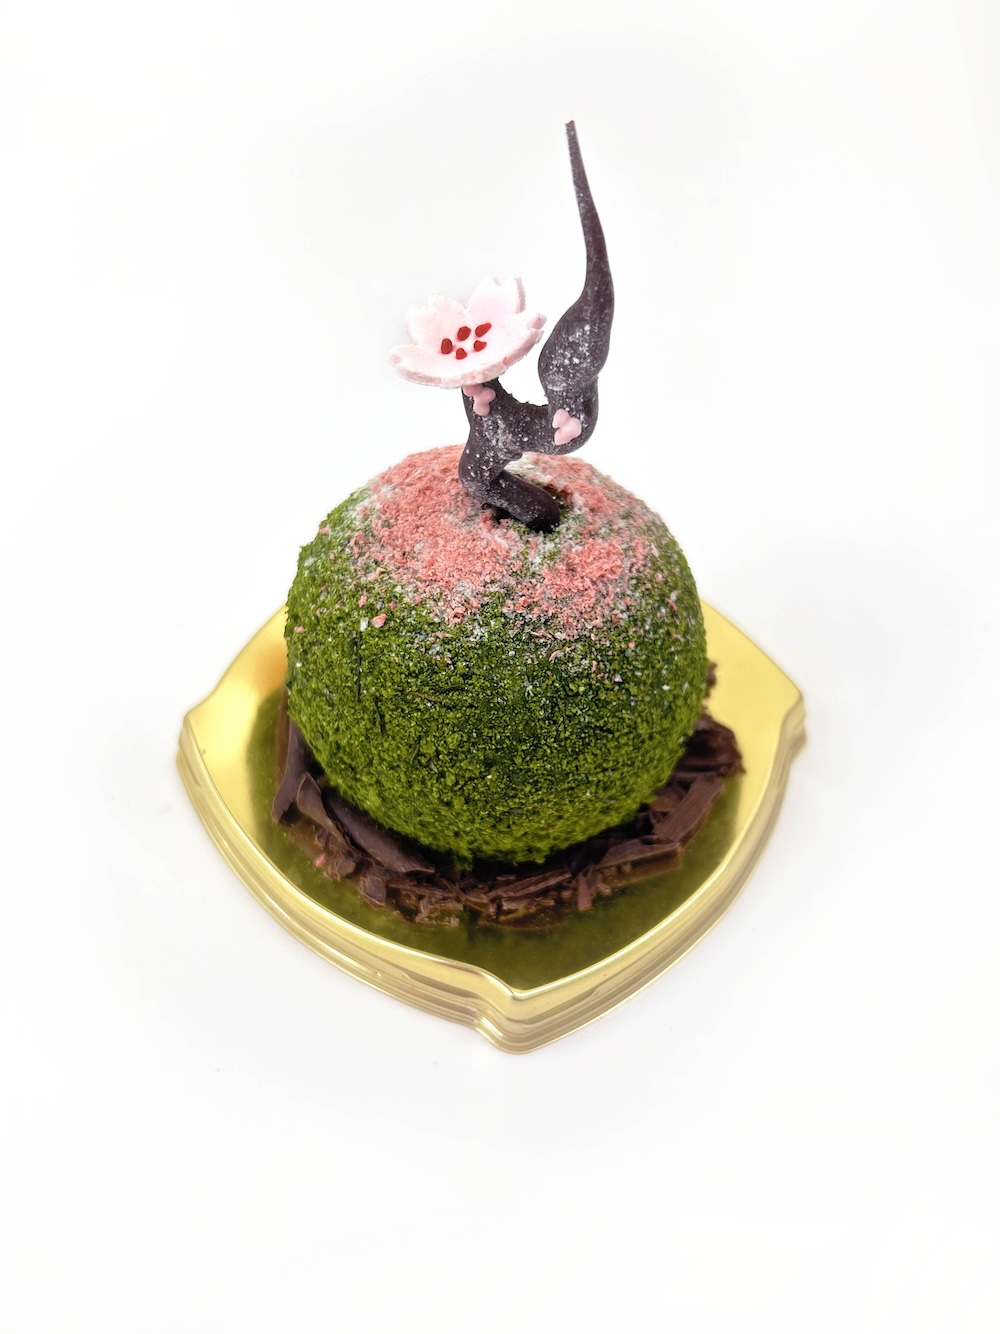 京都祇園のパティスリー「洋菓子ぎをんさかい」は3月1日より、春を感じるスイーツ「花うちわ」および「苔玉（桜）」を発売開始した。いずれも4月までの期間限定発売となる。